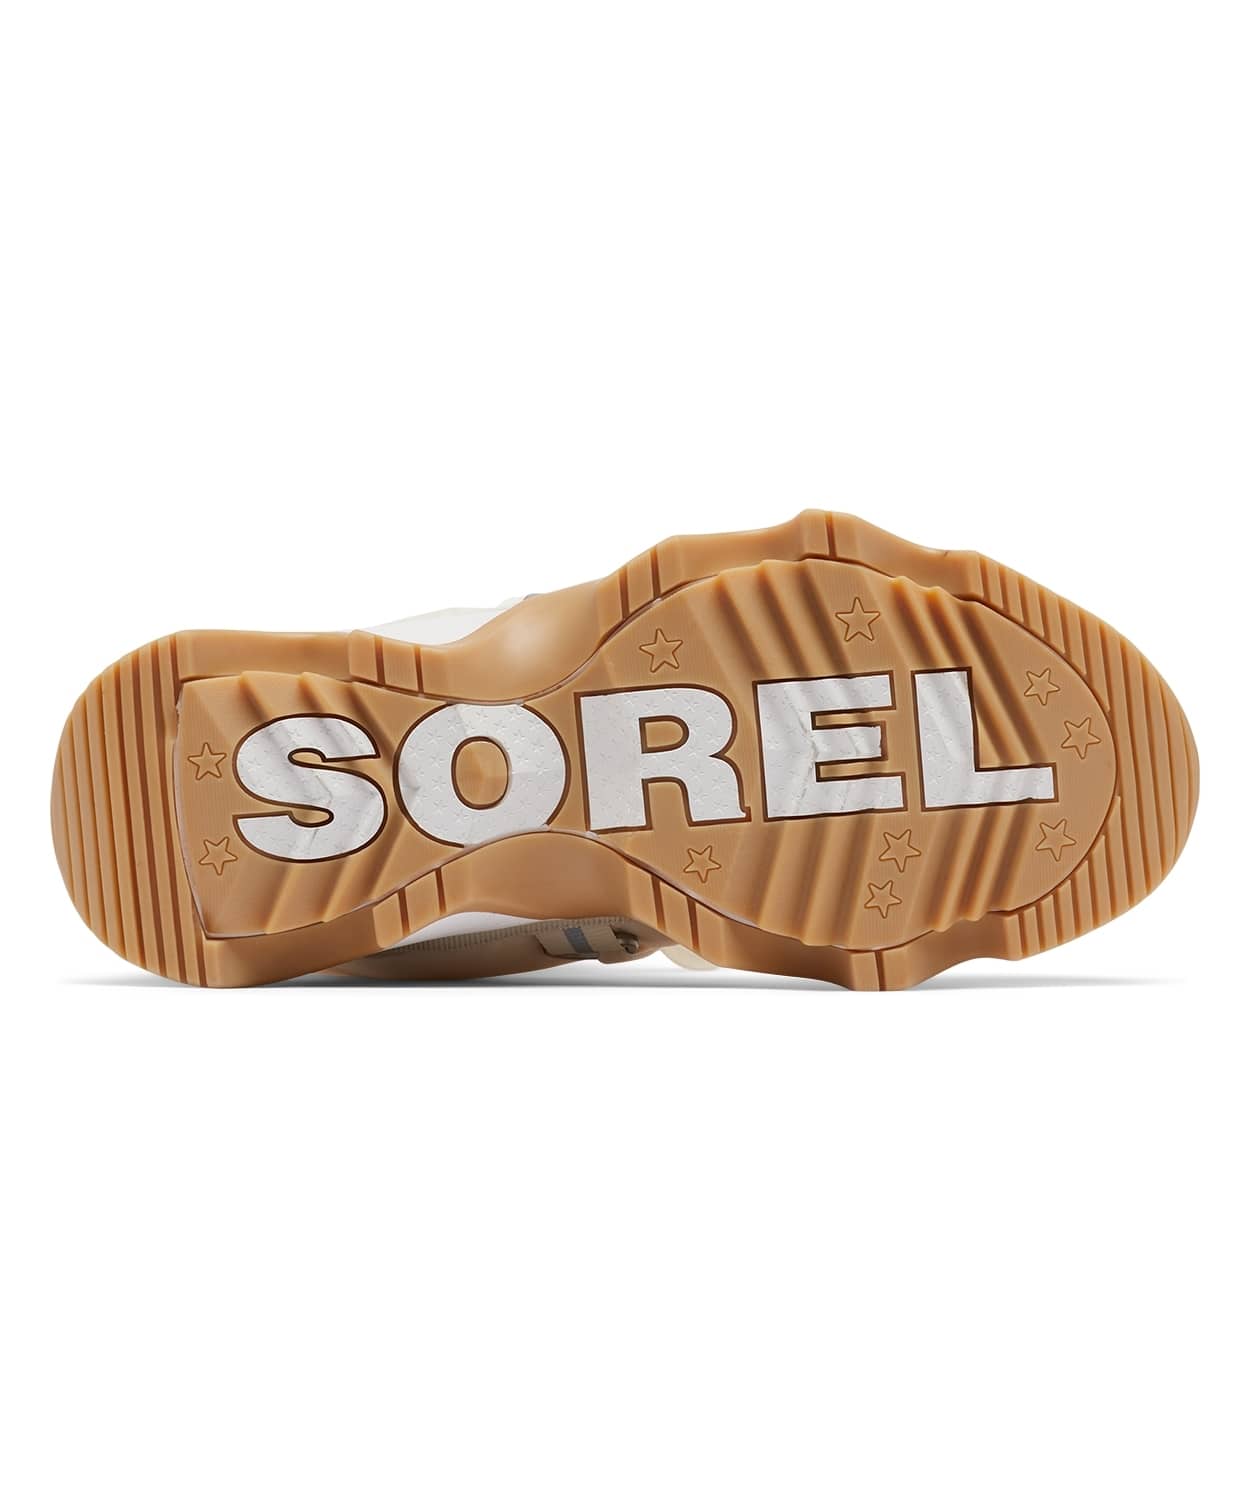 SOREL（ソレル）公式サイトキネティックインパクト ネクスト ブーツ